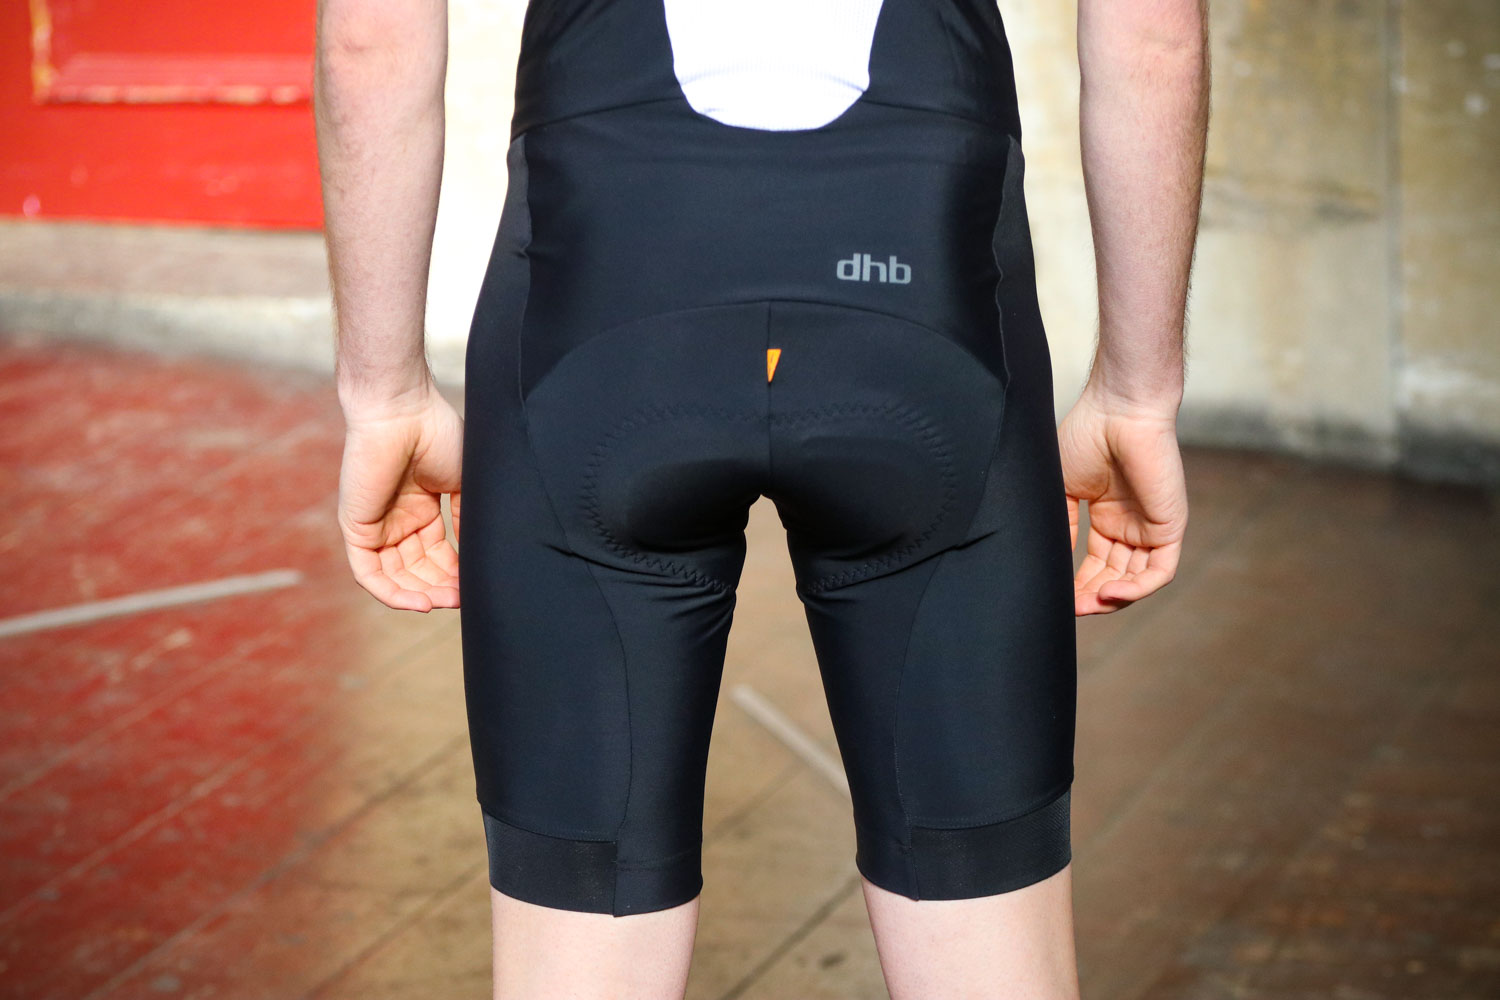 dhb aeron speed bib shorts